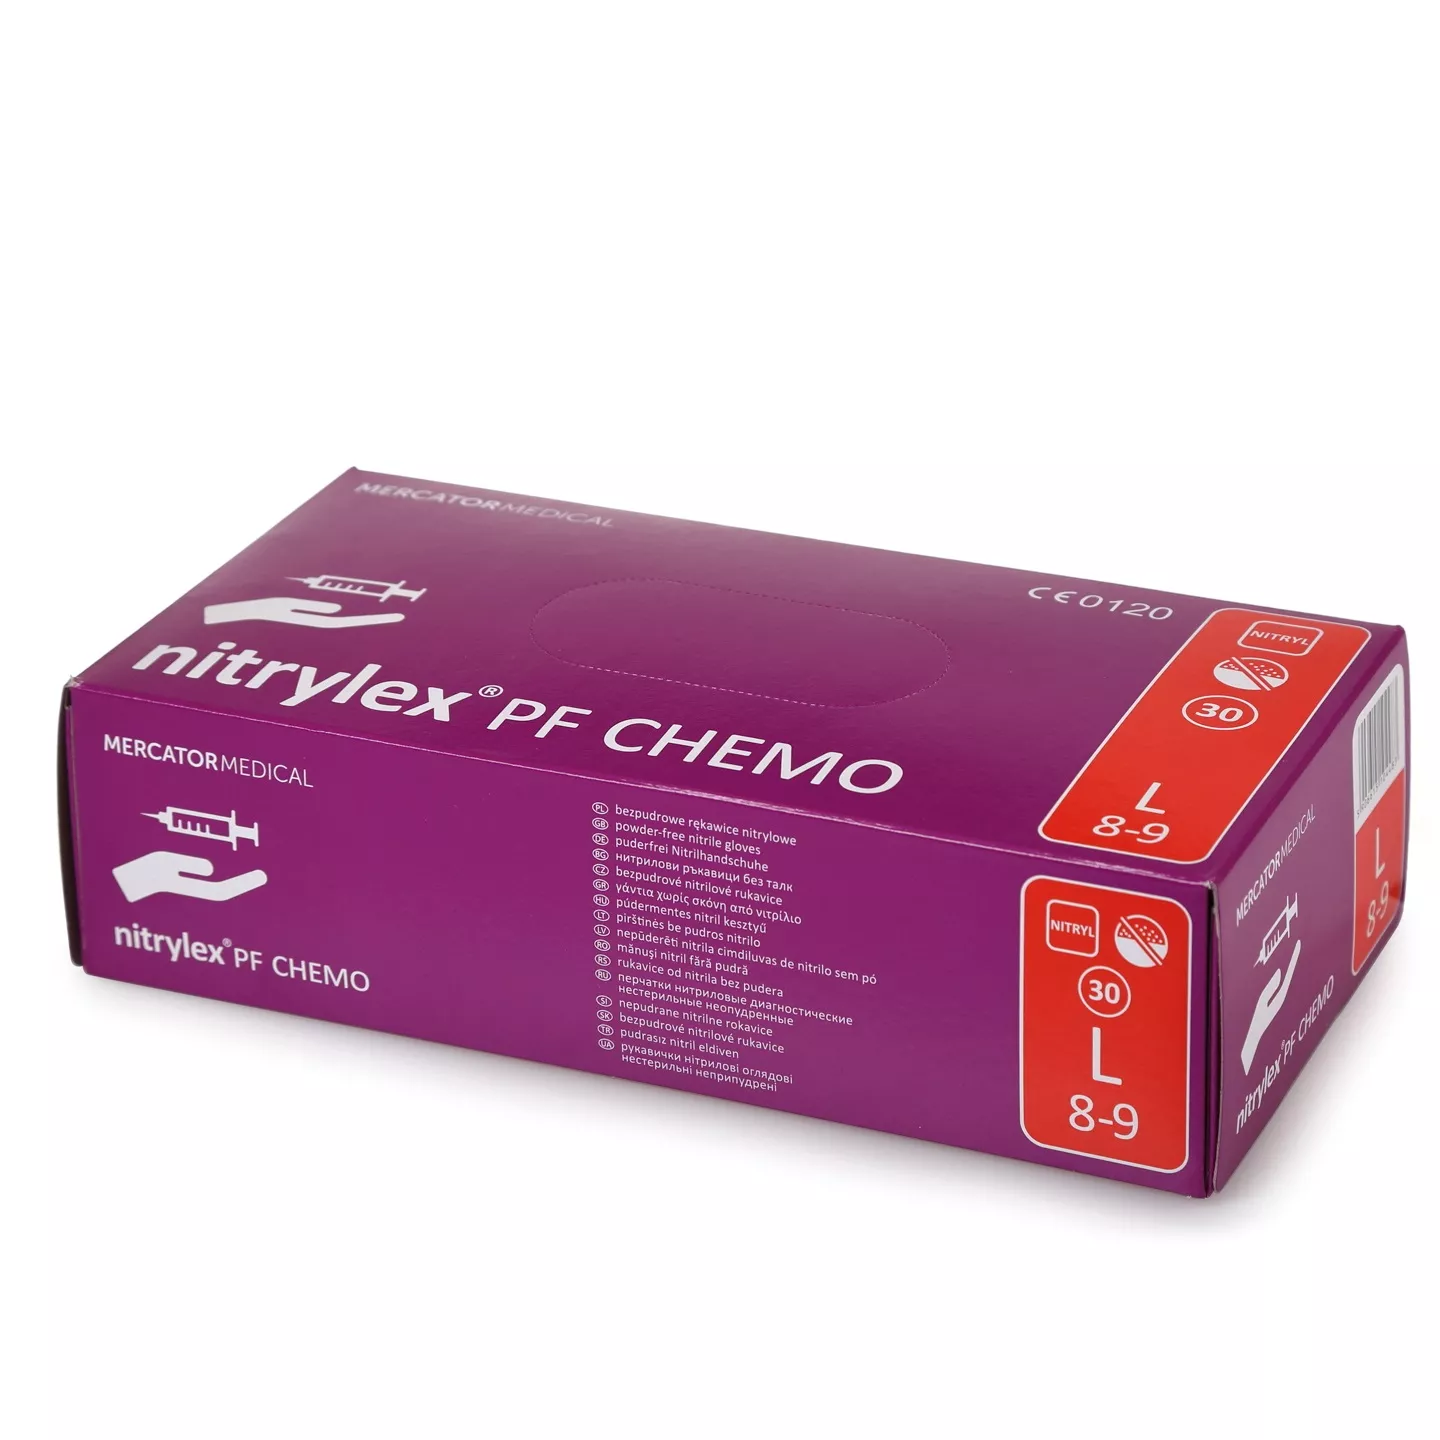 Перчатки Nitrylex® PF CHEMO, размер L, нитриловые, текстурированные, неопудренные, повышенной прочности, нестерильные